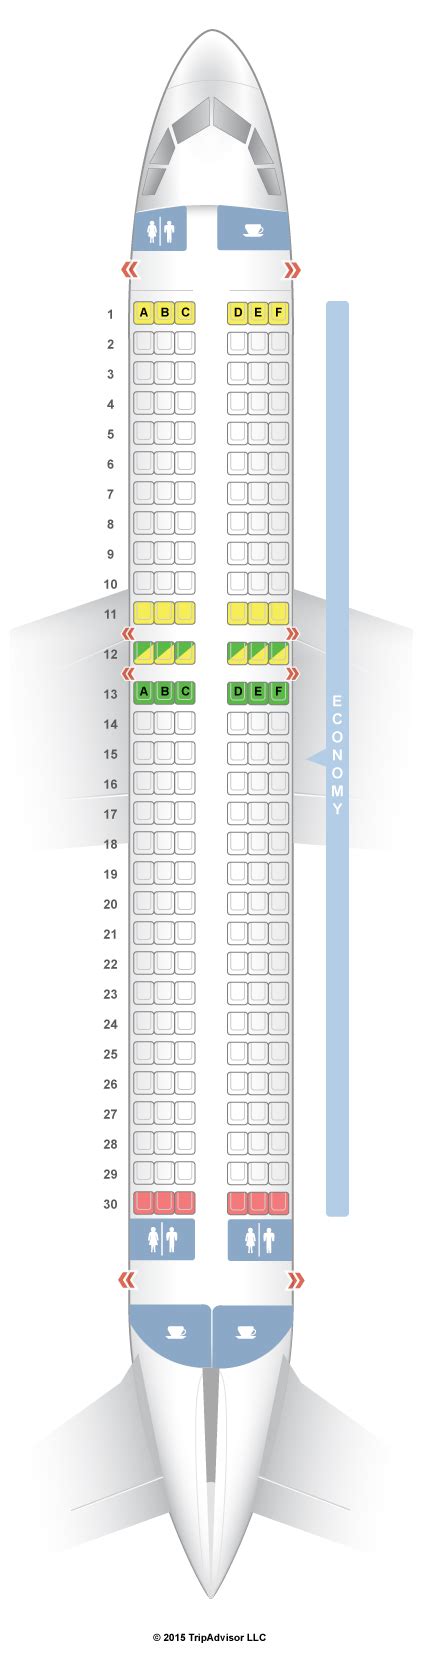 Seatguru Seat Map Indigo Airlines Airbus A320 320